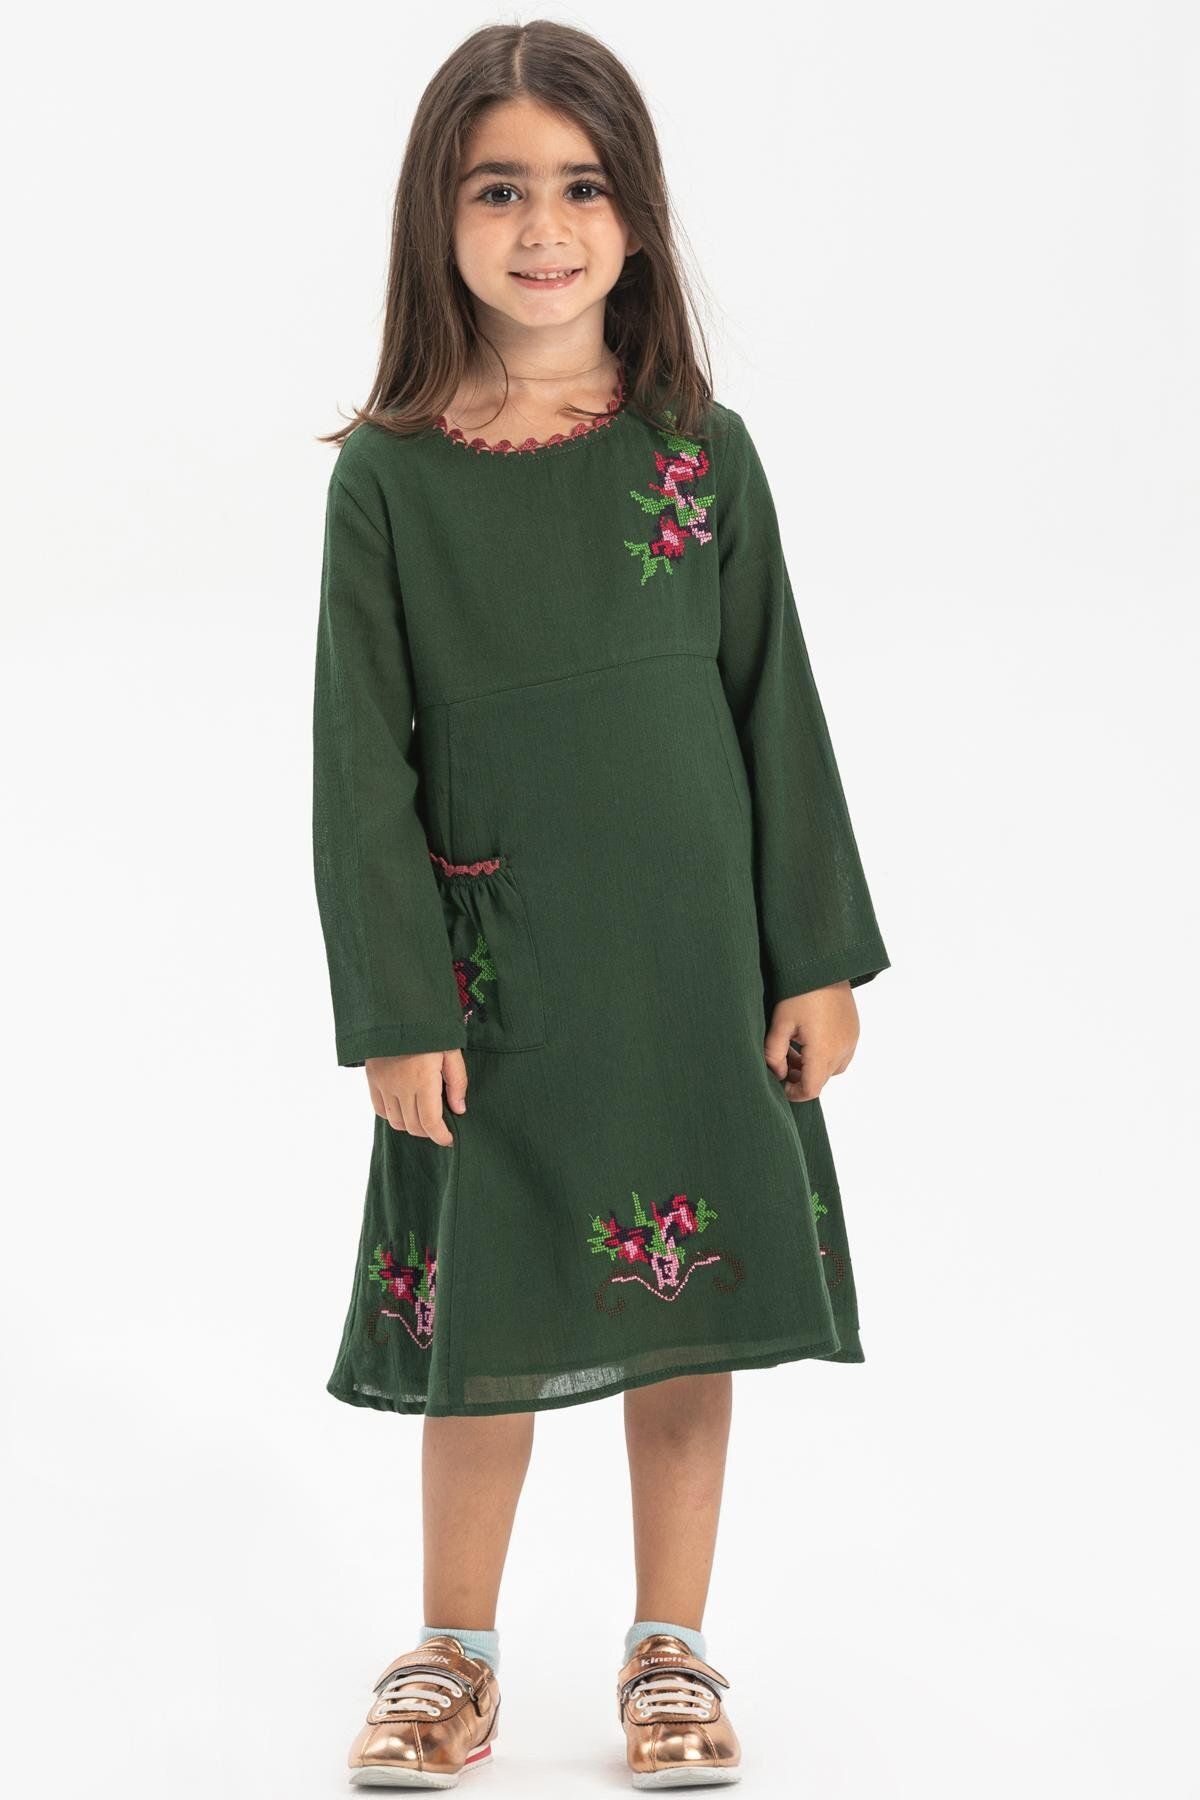 Eliş Şile Bezi Uzun Kol Şile Bezi Burçak Yazlık Çocuk Elbise Yeşil Ysl